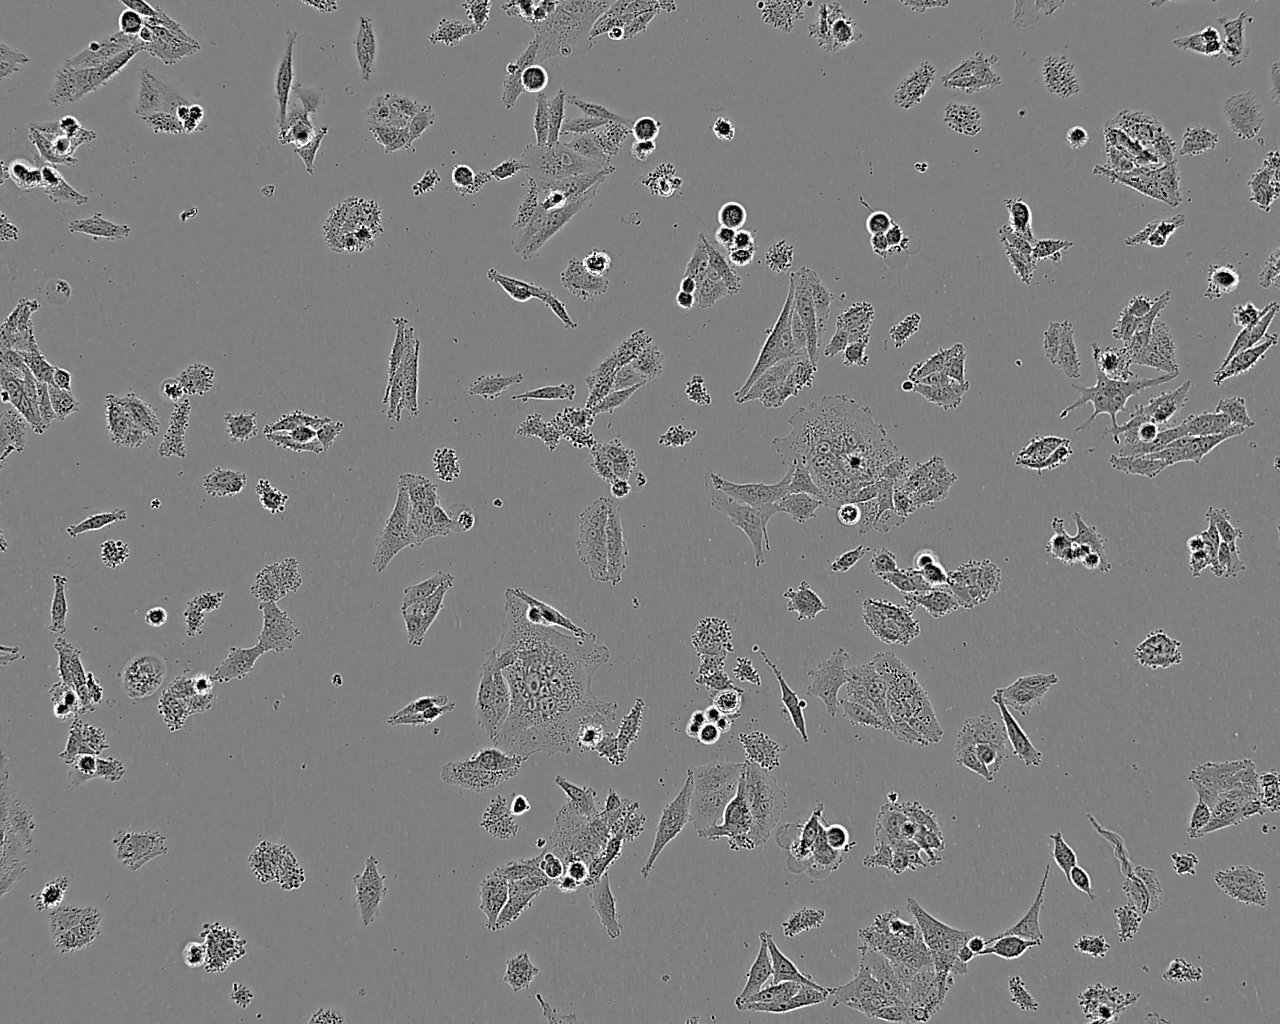 KYSE-30 Fresh Cells|人食道癌细胞(送STR基因图谱),KYSE-30 Fresh Cells